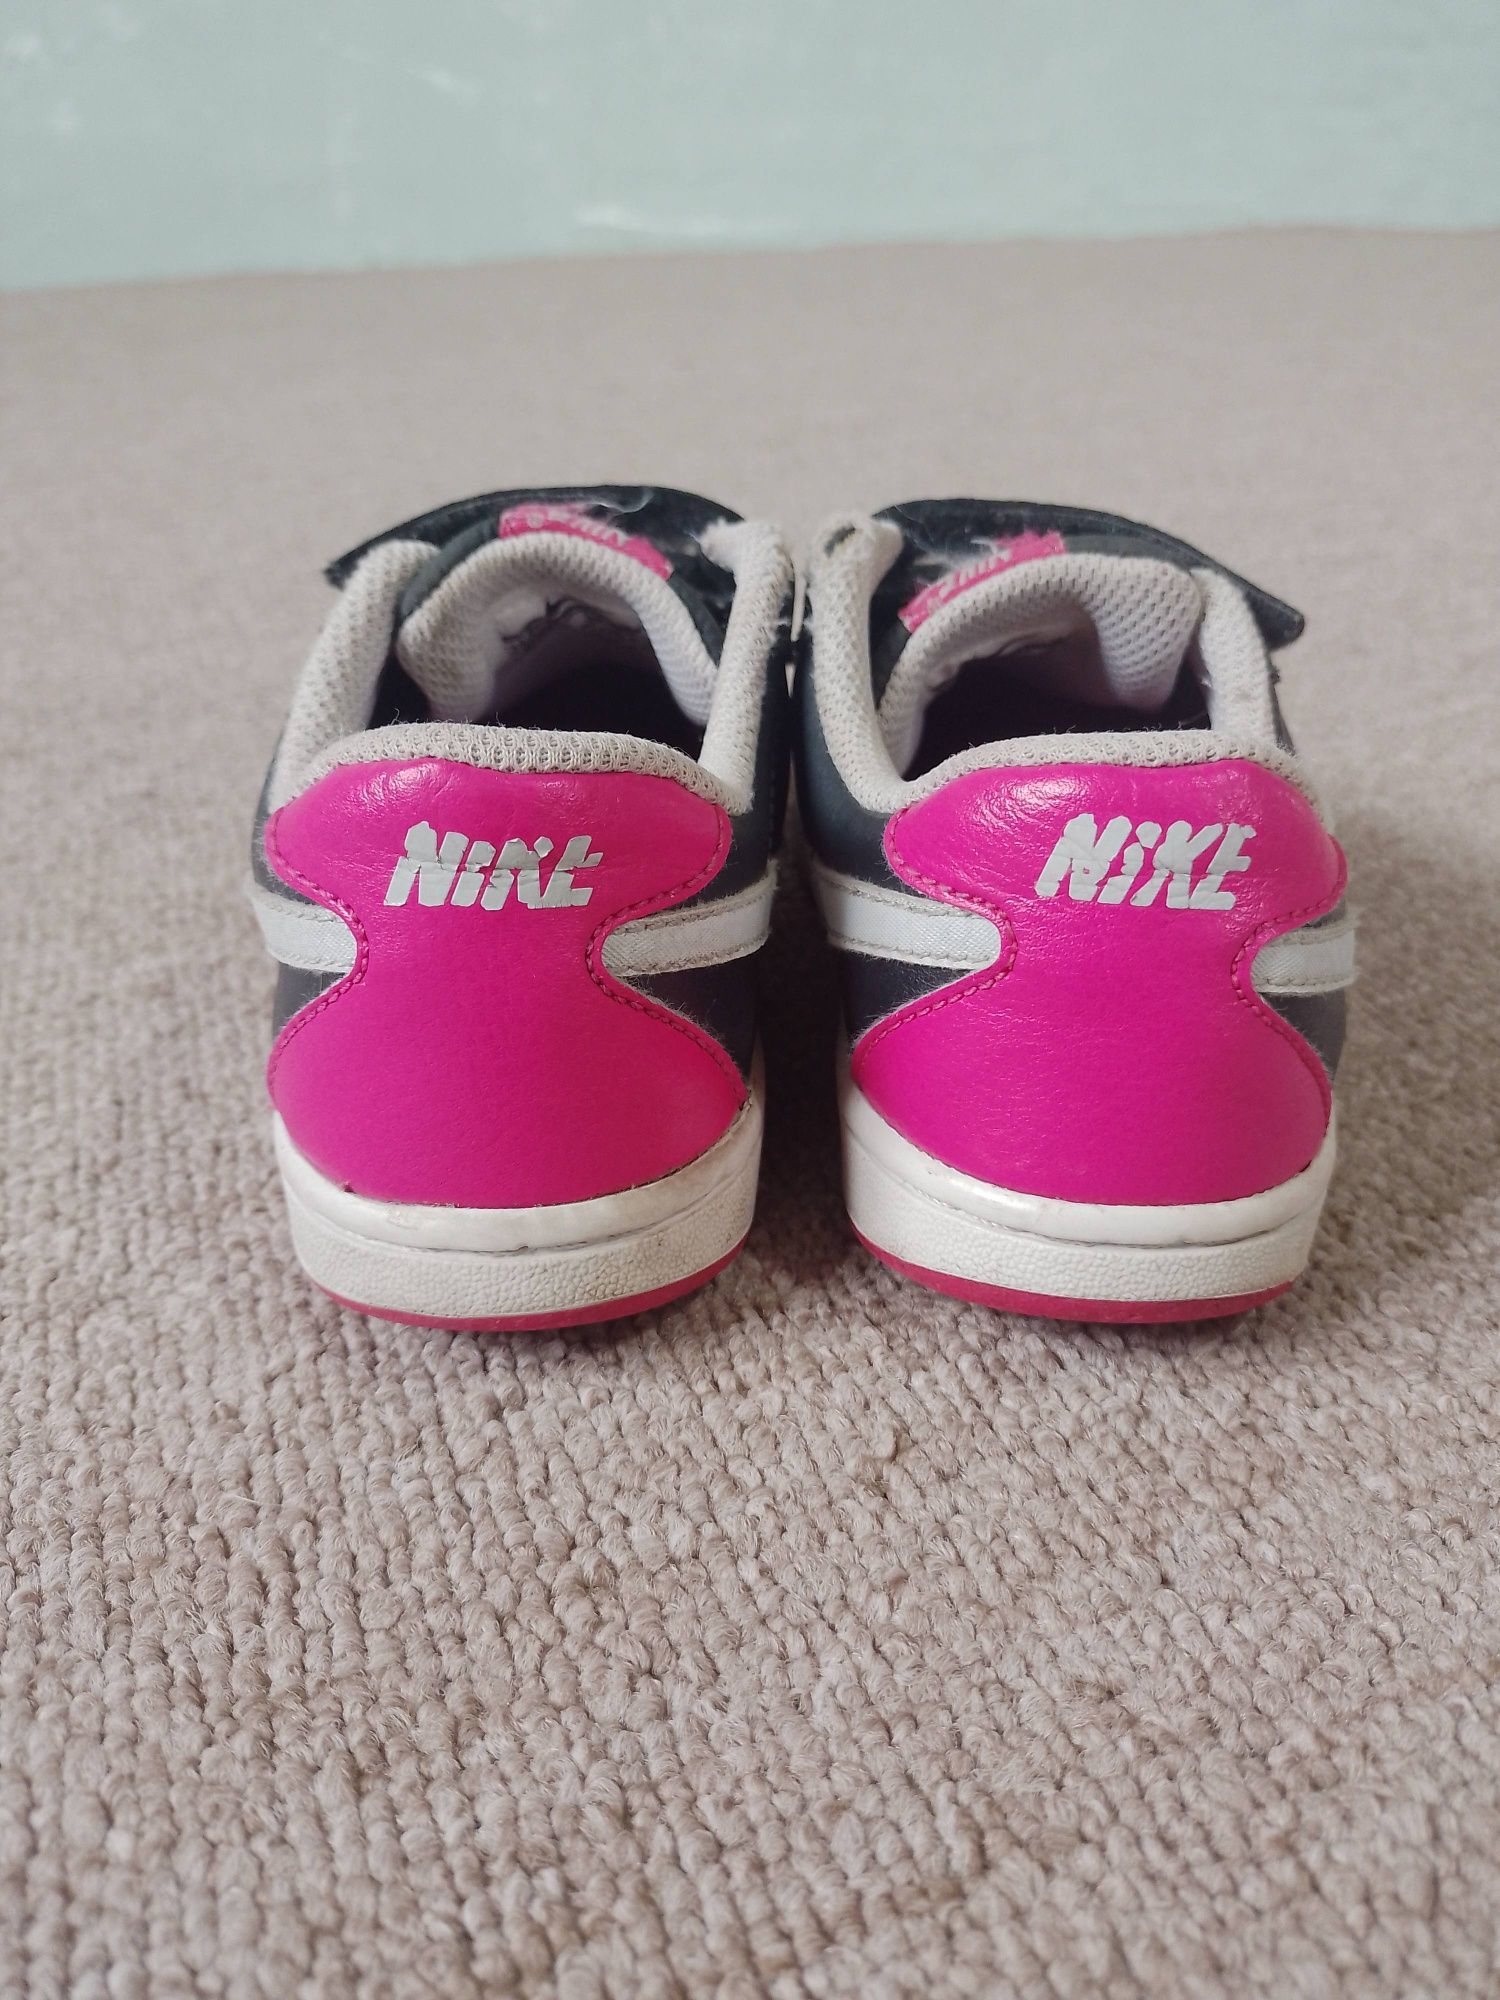 Продам кросівки Nike для дівчинки 30 розміру